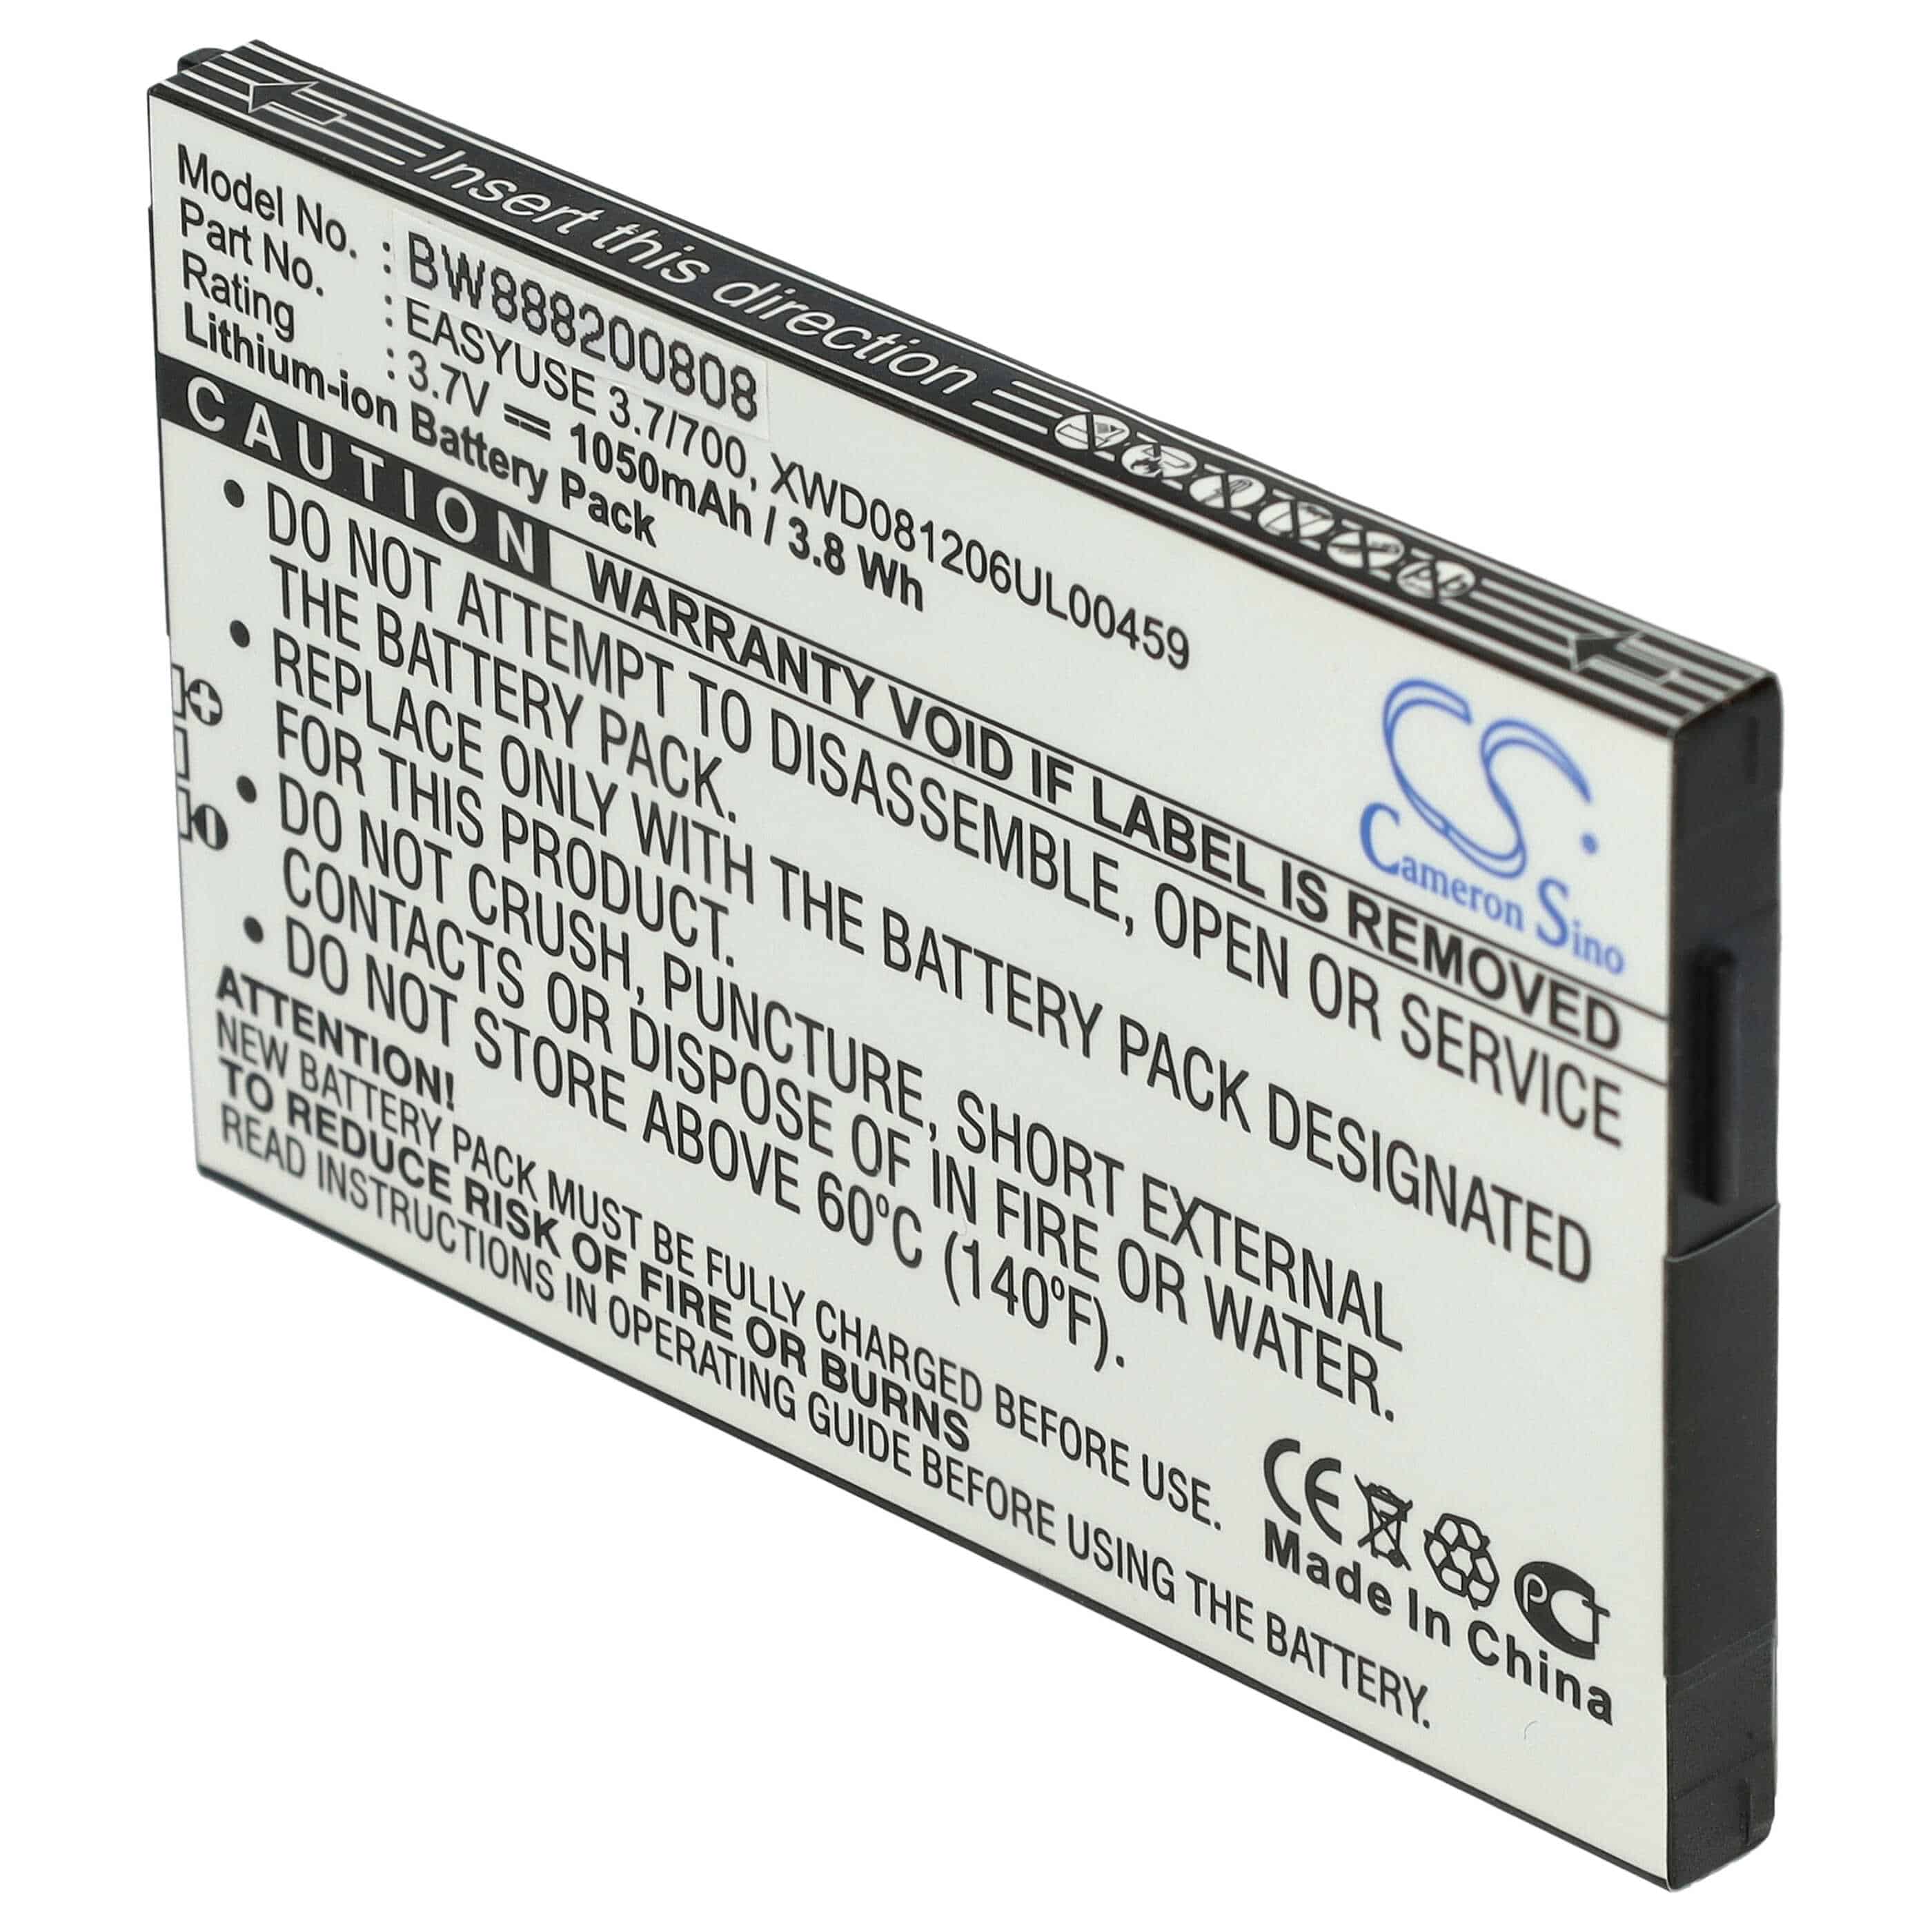 Batterie remplace Doro EASYUSE 3.7/700, DBK-700 pour téléphone portable - 1050mAh, 3,7V, Li-ion